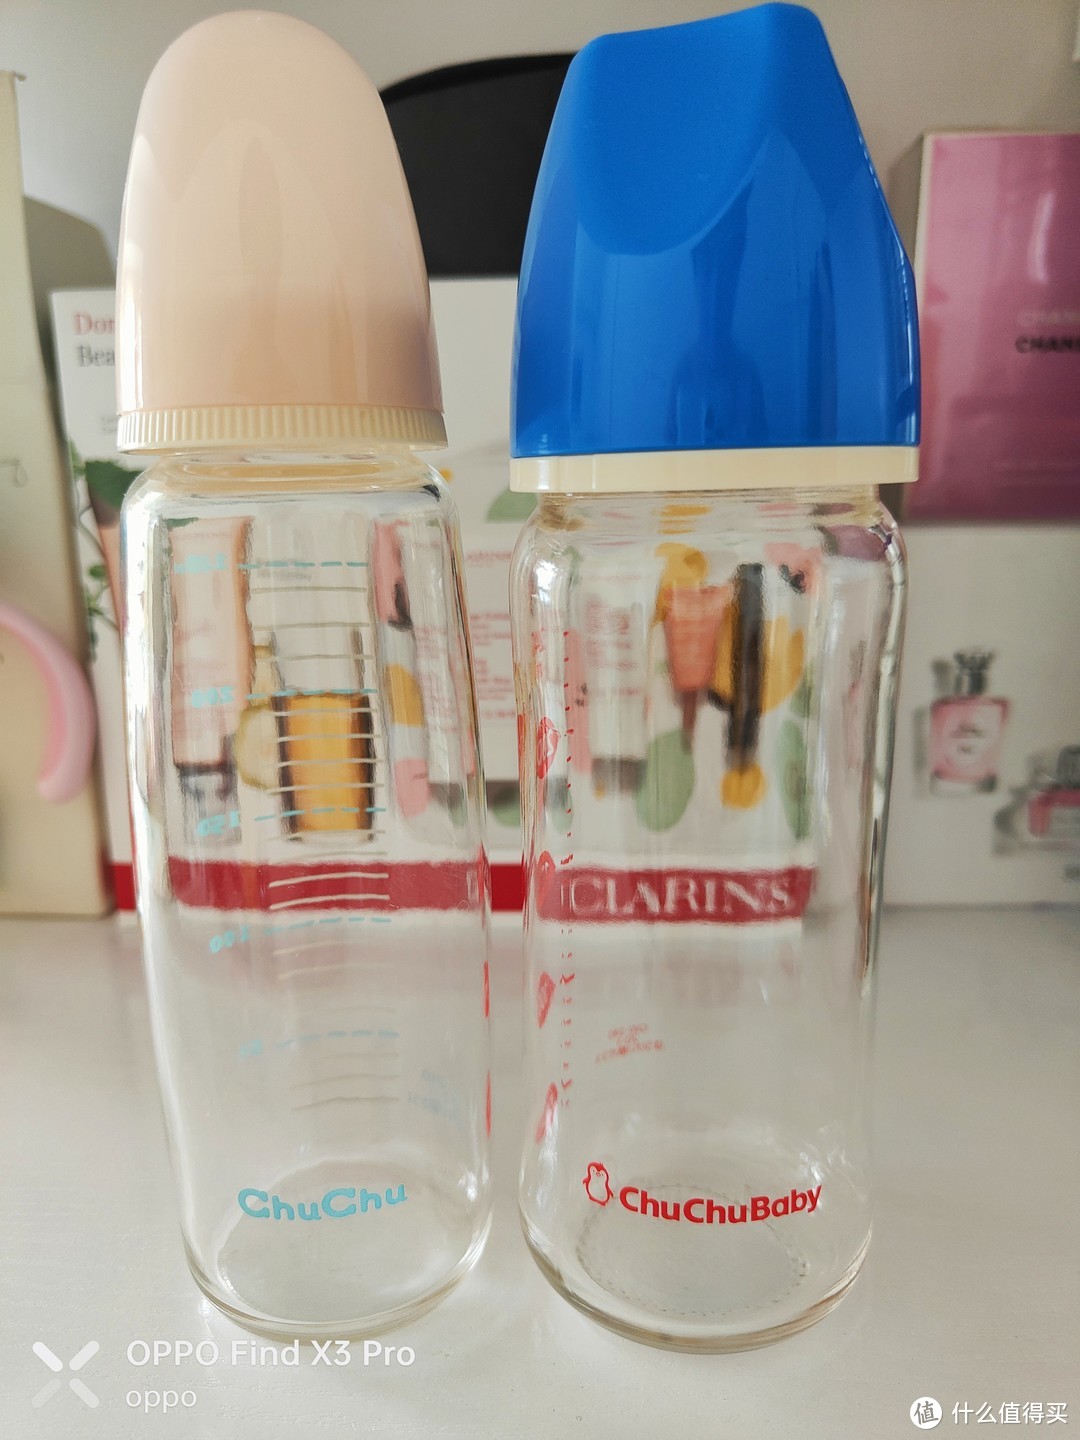 自己这只放了这两个玻璃奶瓶，其他几个ppsu奶瓶都在我爸妈家